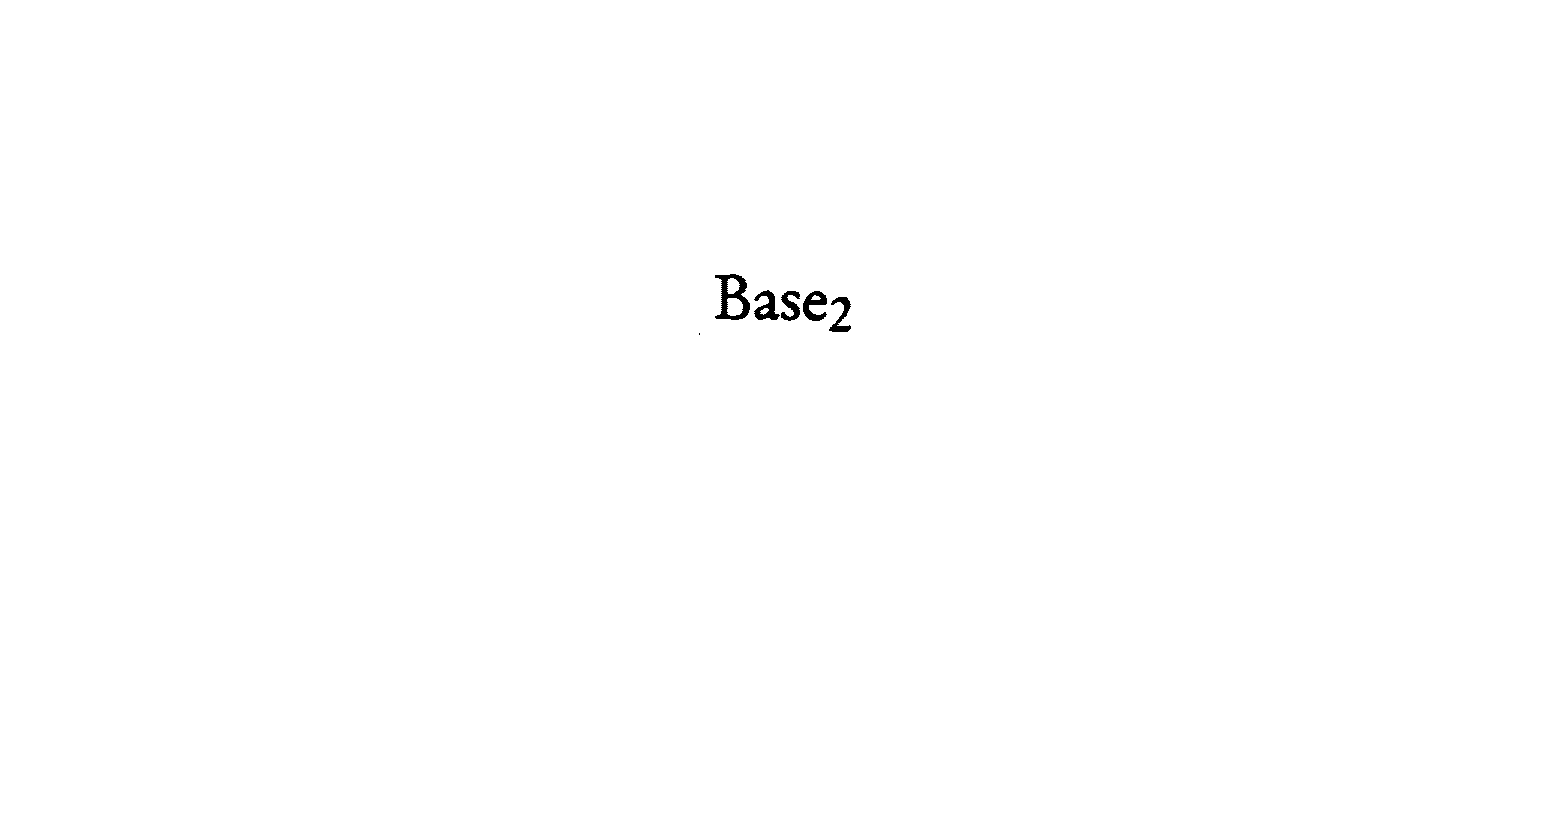  BASE2